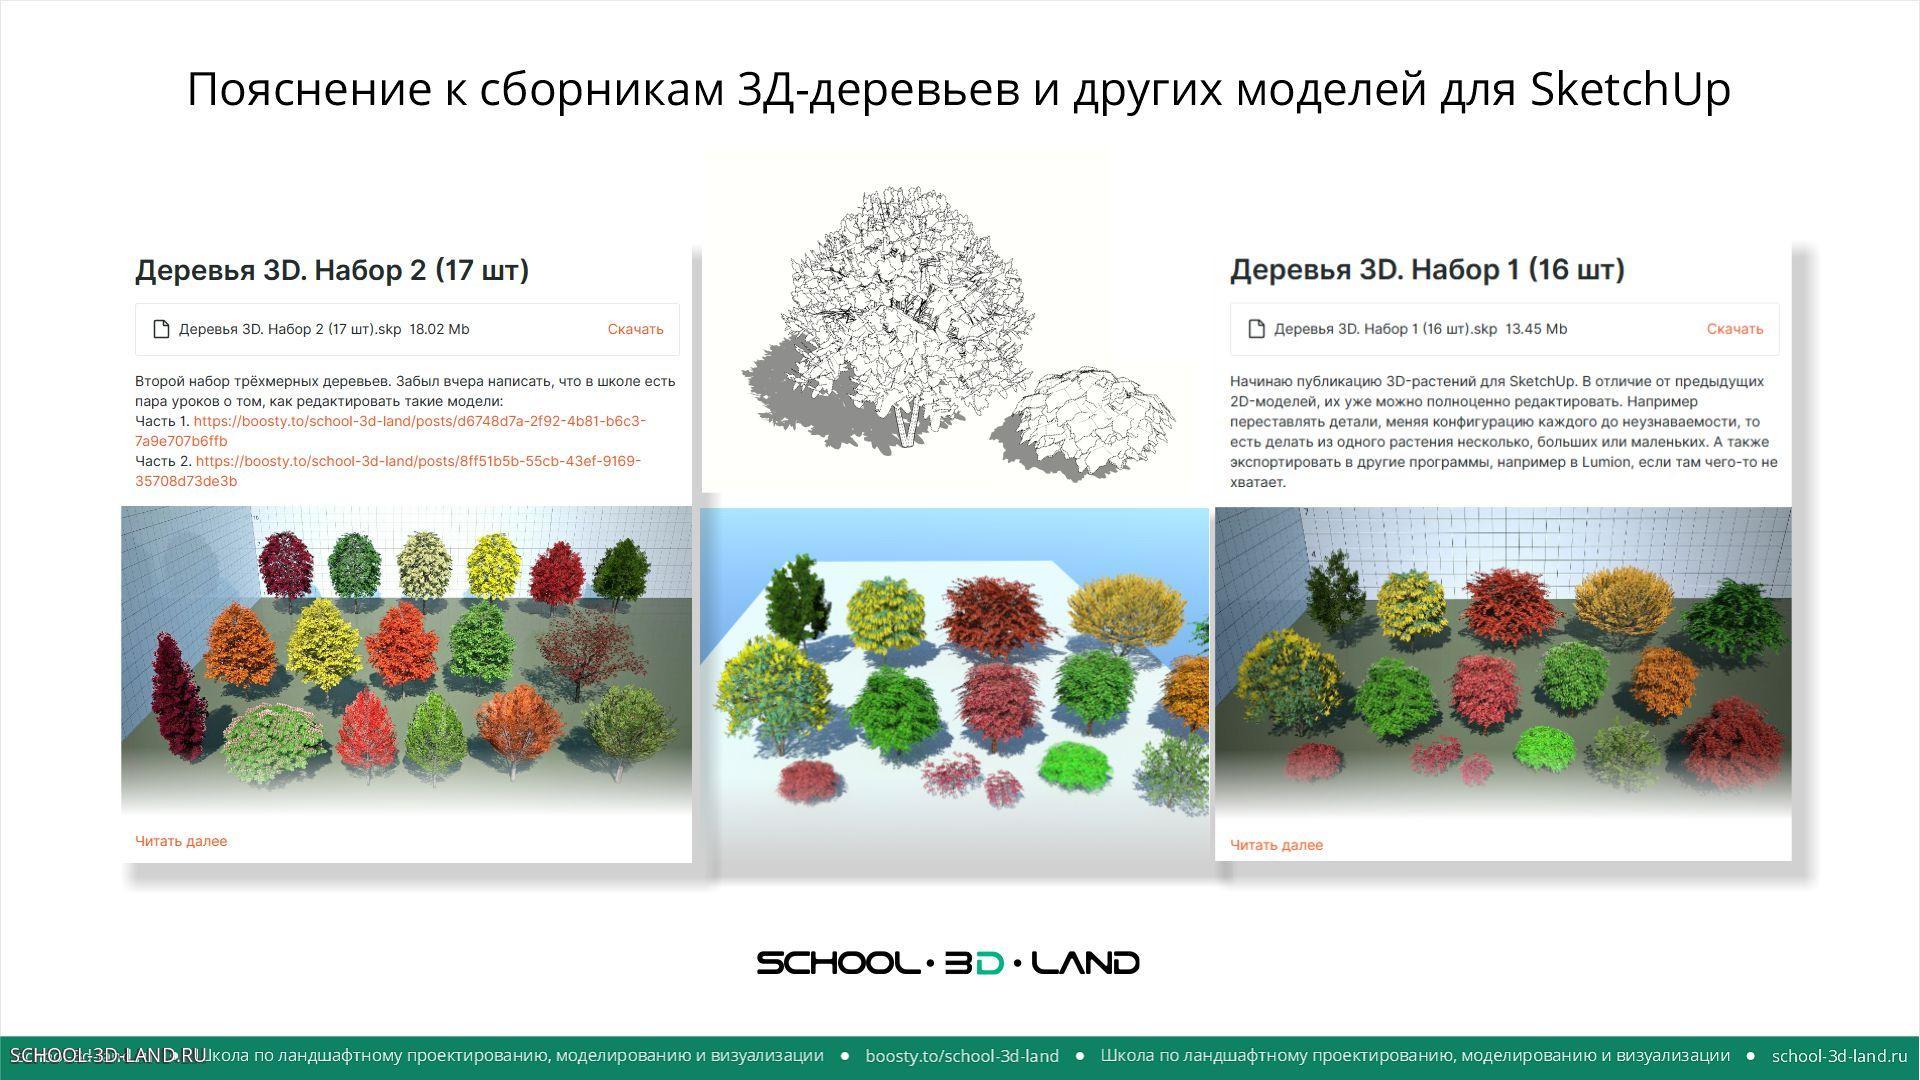 Пояснение к сборникам 3Д деревьев для программы SketchUp